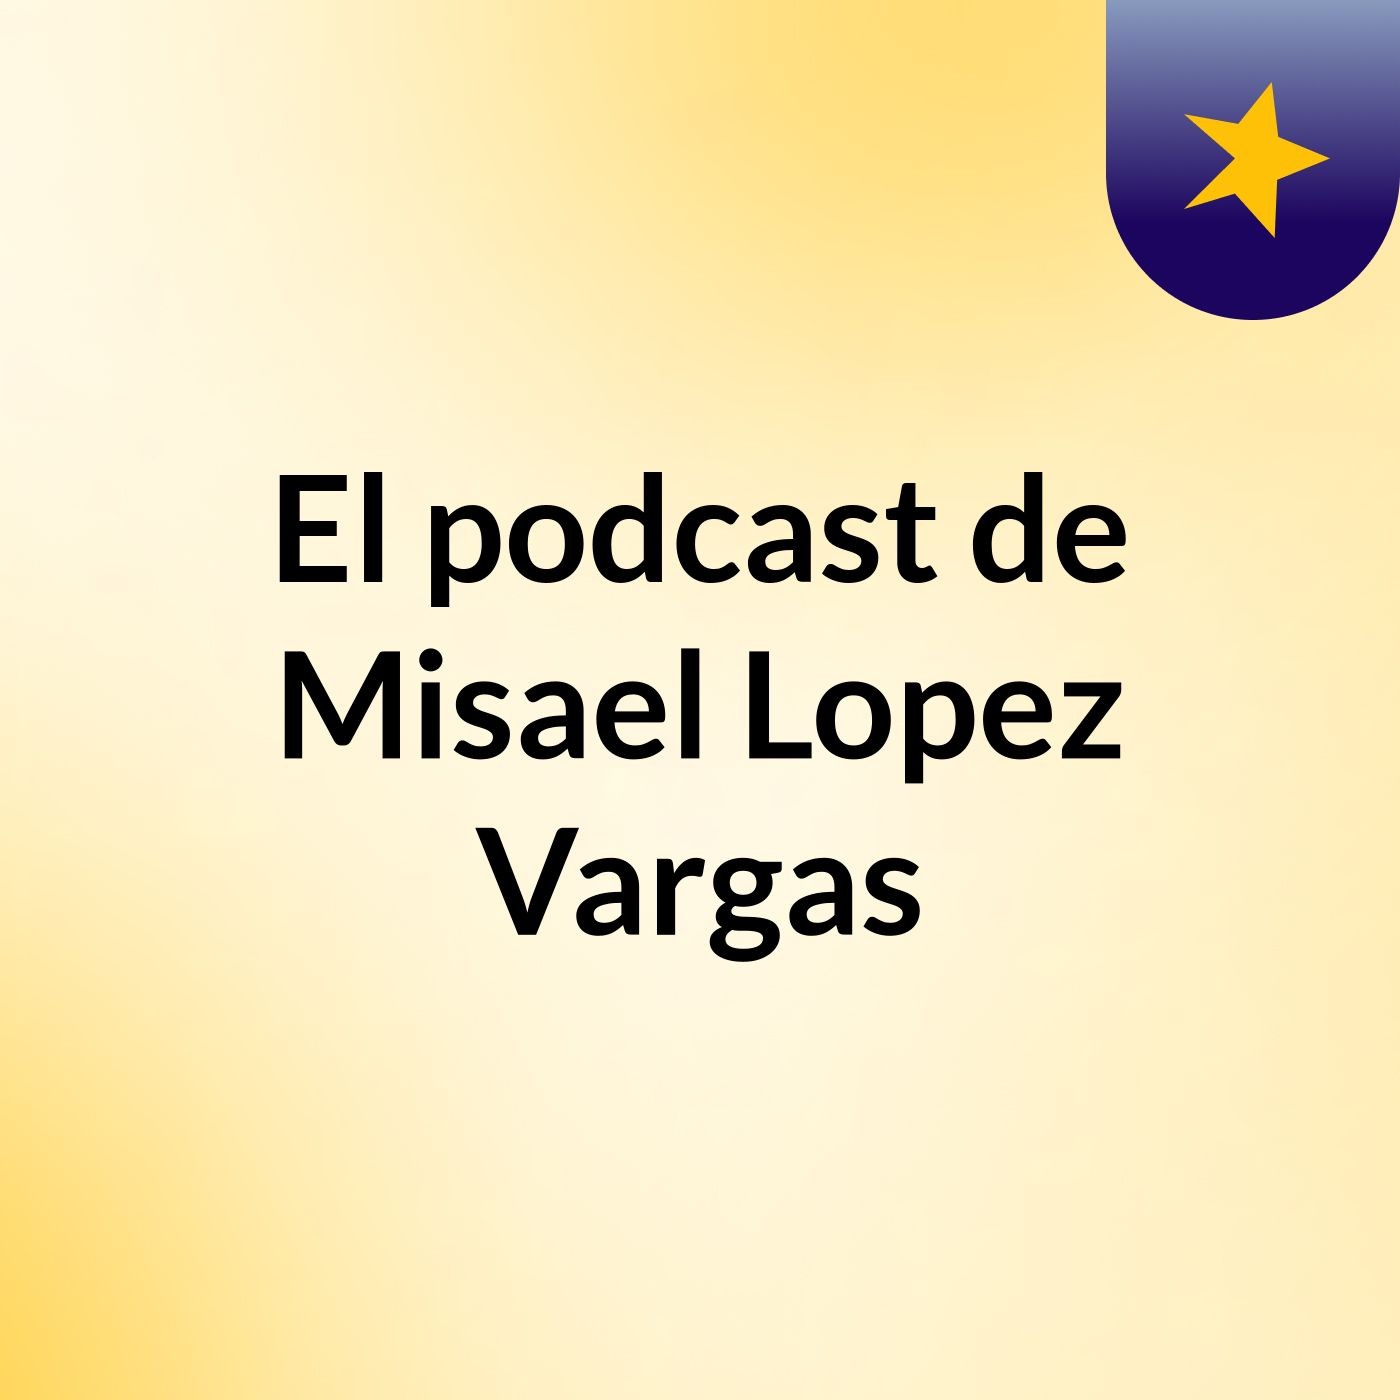 El podcast de Misael Lopez Vargas